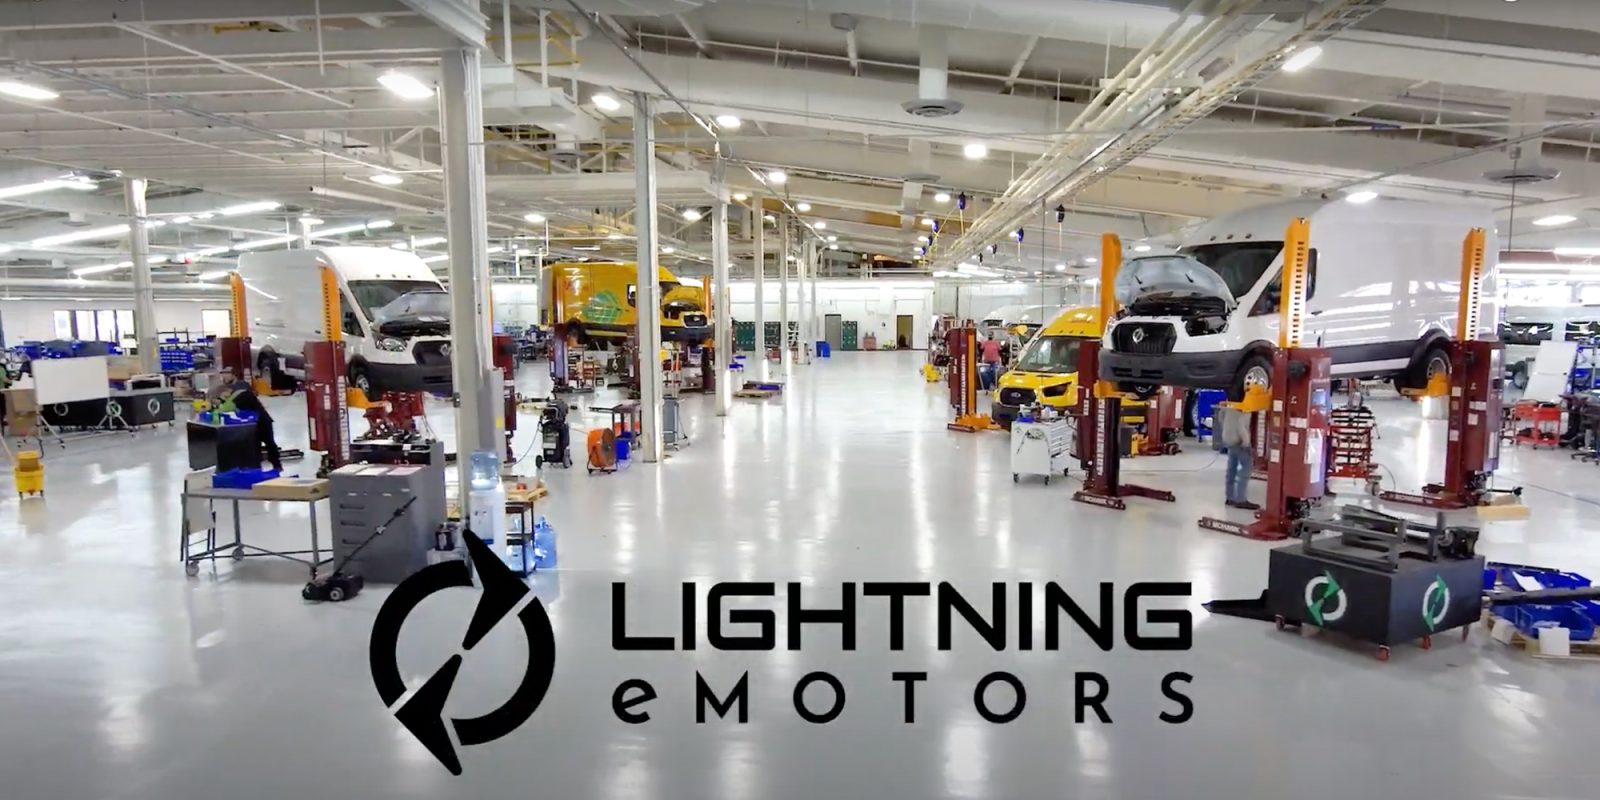 Lightning eMotors facility